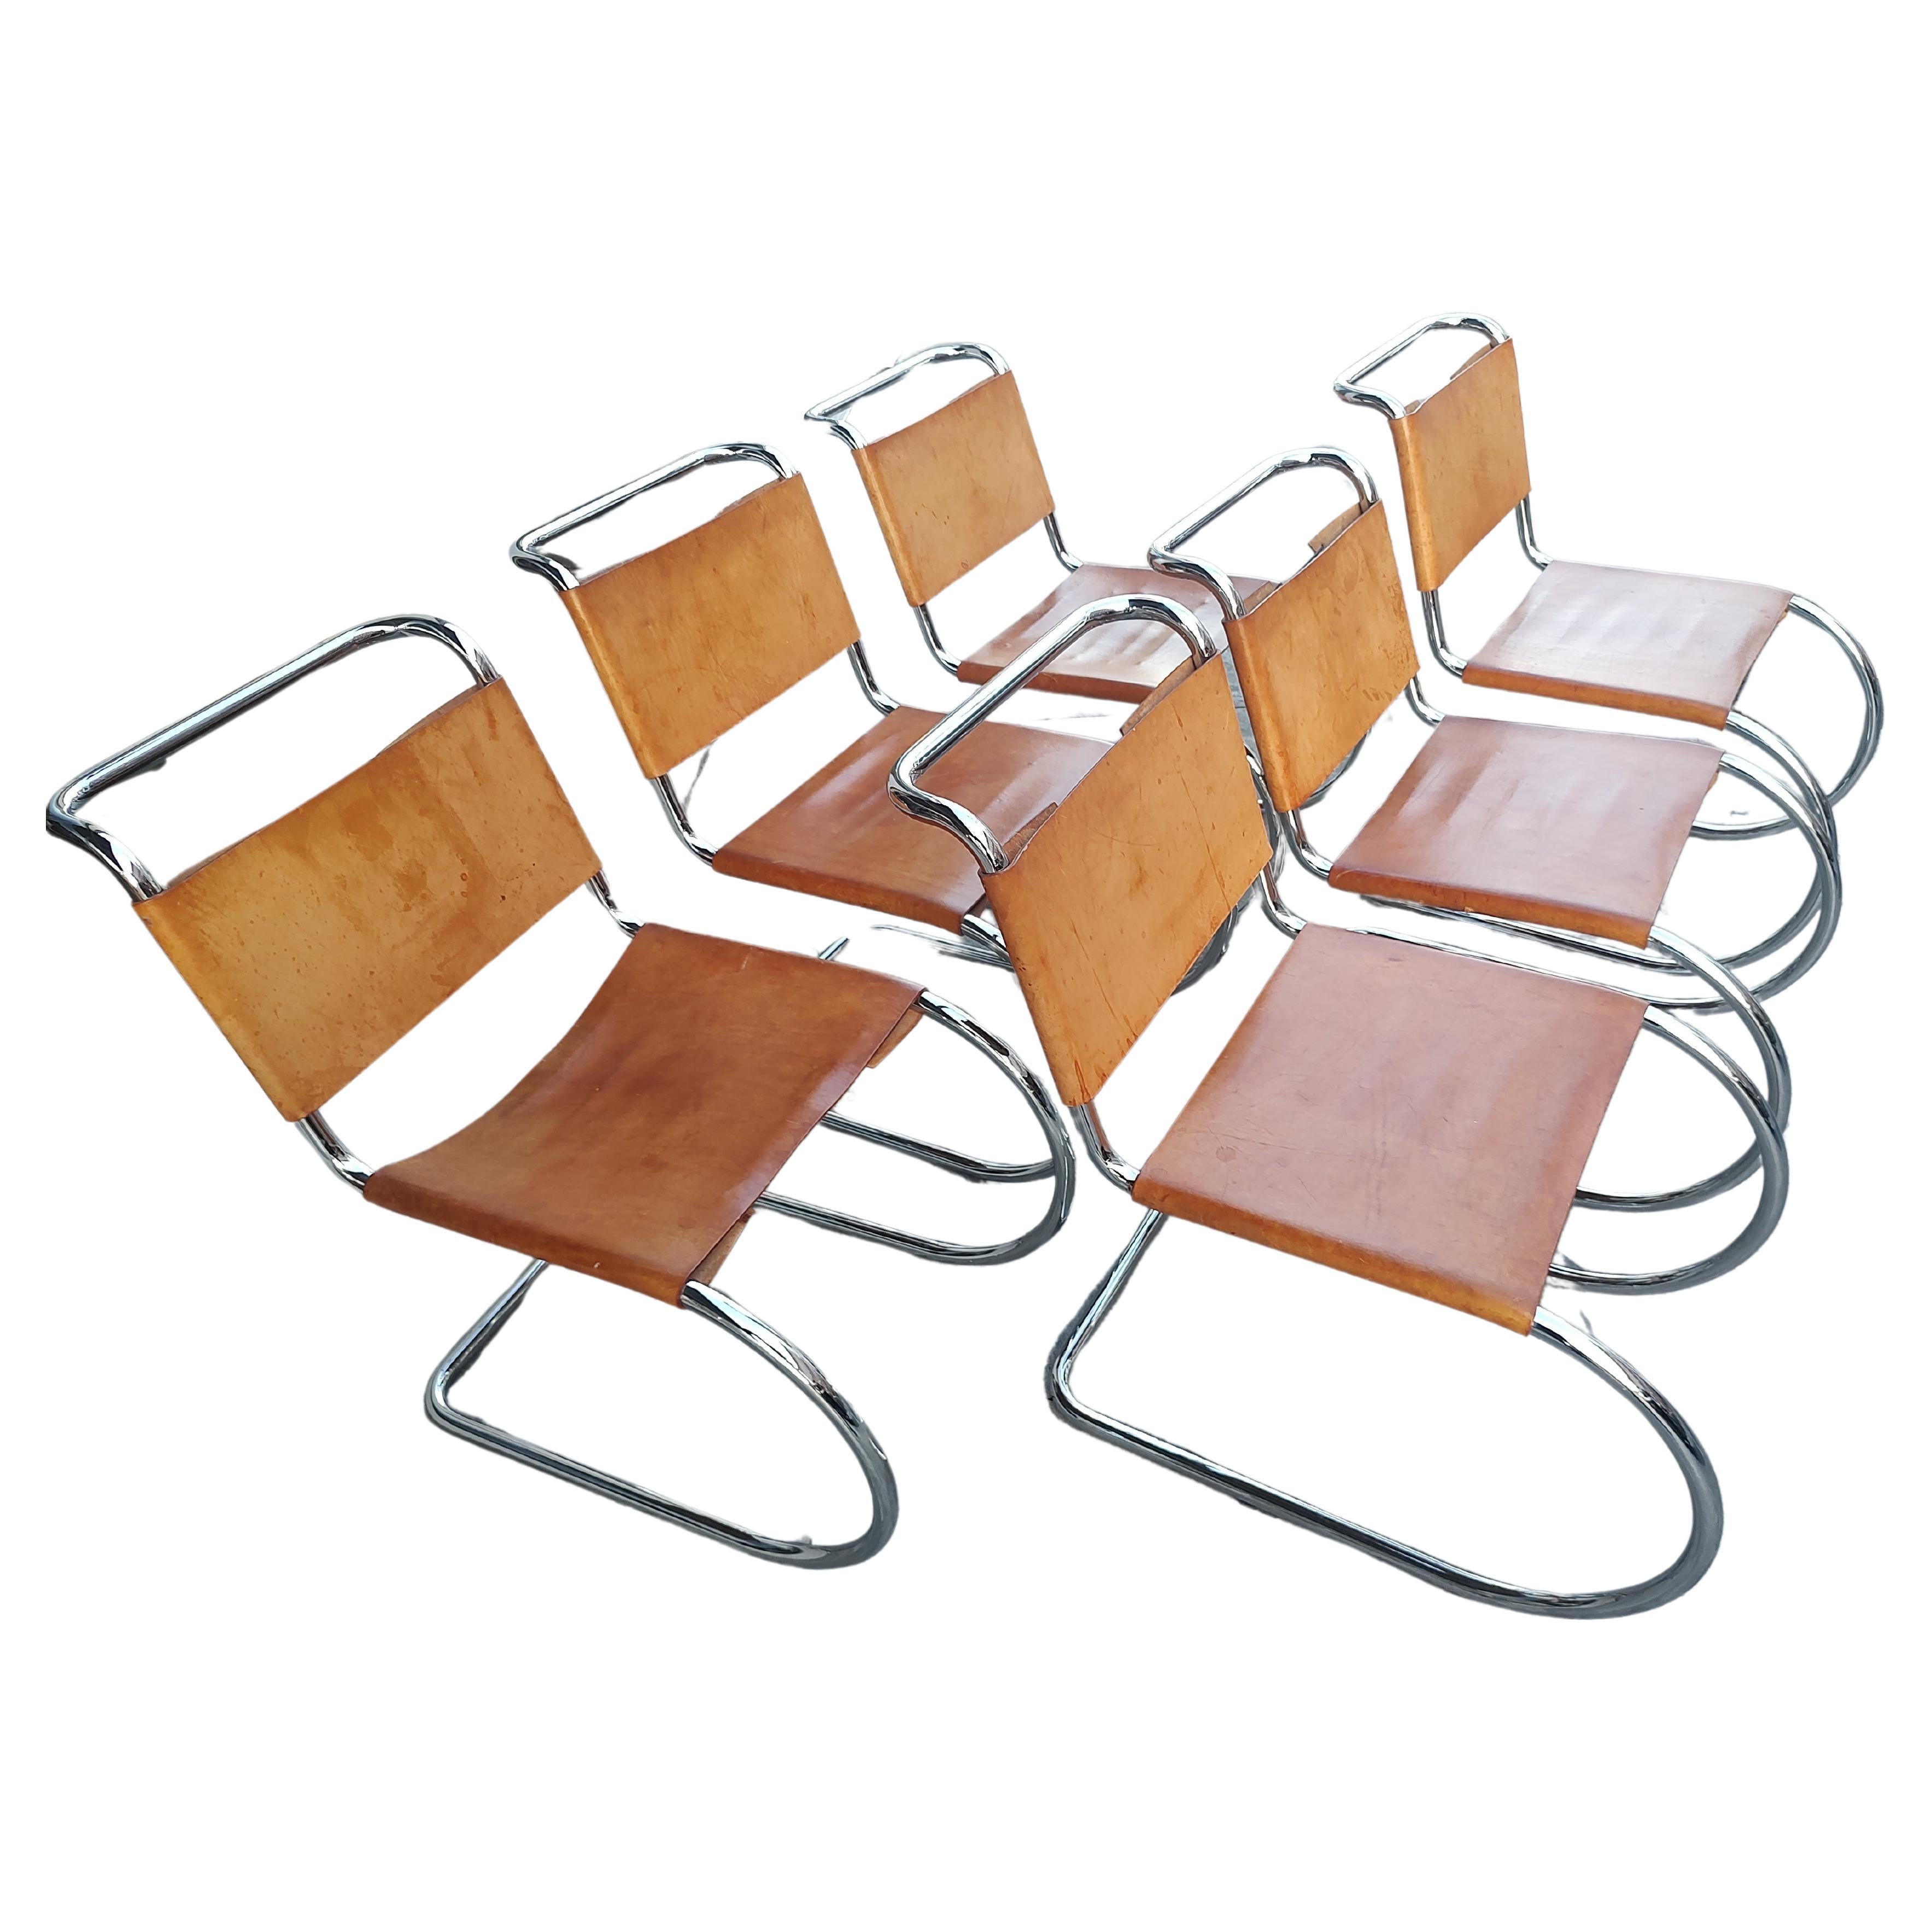 Fabelhaftes Set von 6 MR10 Stühlen, entworfen von Mies van der Rohe vor fast einem Jahrhundert und ein ikonischer Stuhl. 6er-Set mit dickem Sattelleder für Sitze und Rückenlehnen mit freitragenden Chromrahmenstühlen. Hergestellt von Palazzetti in